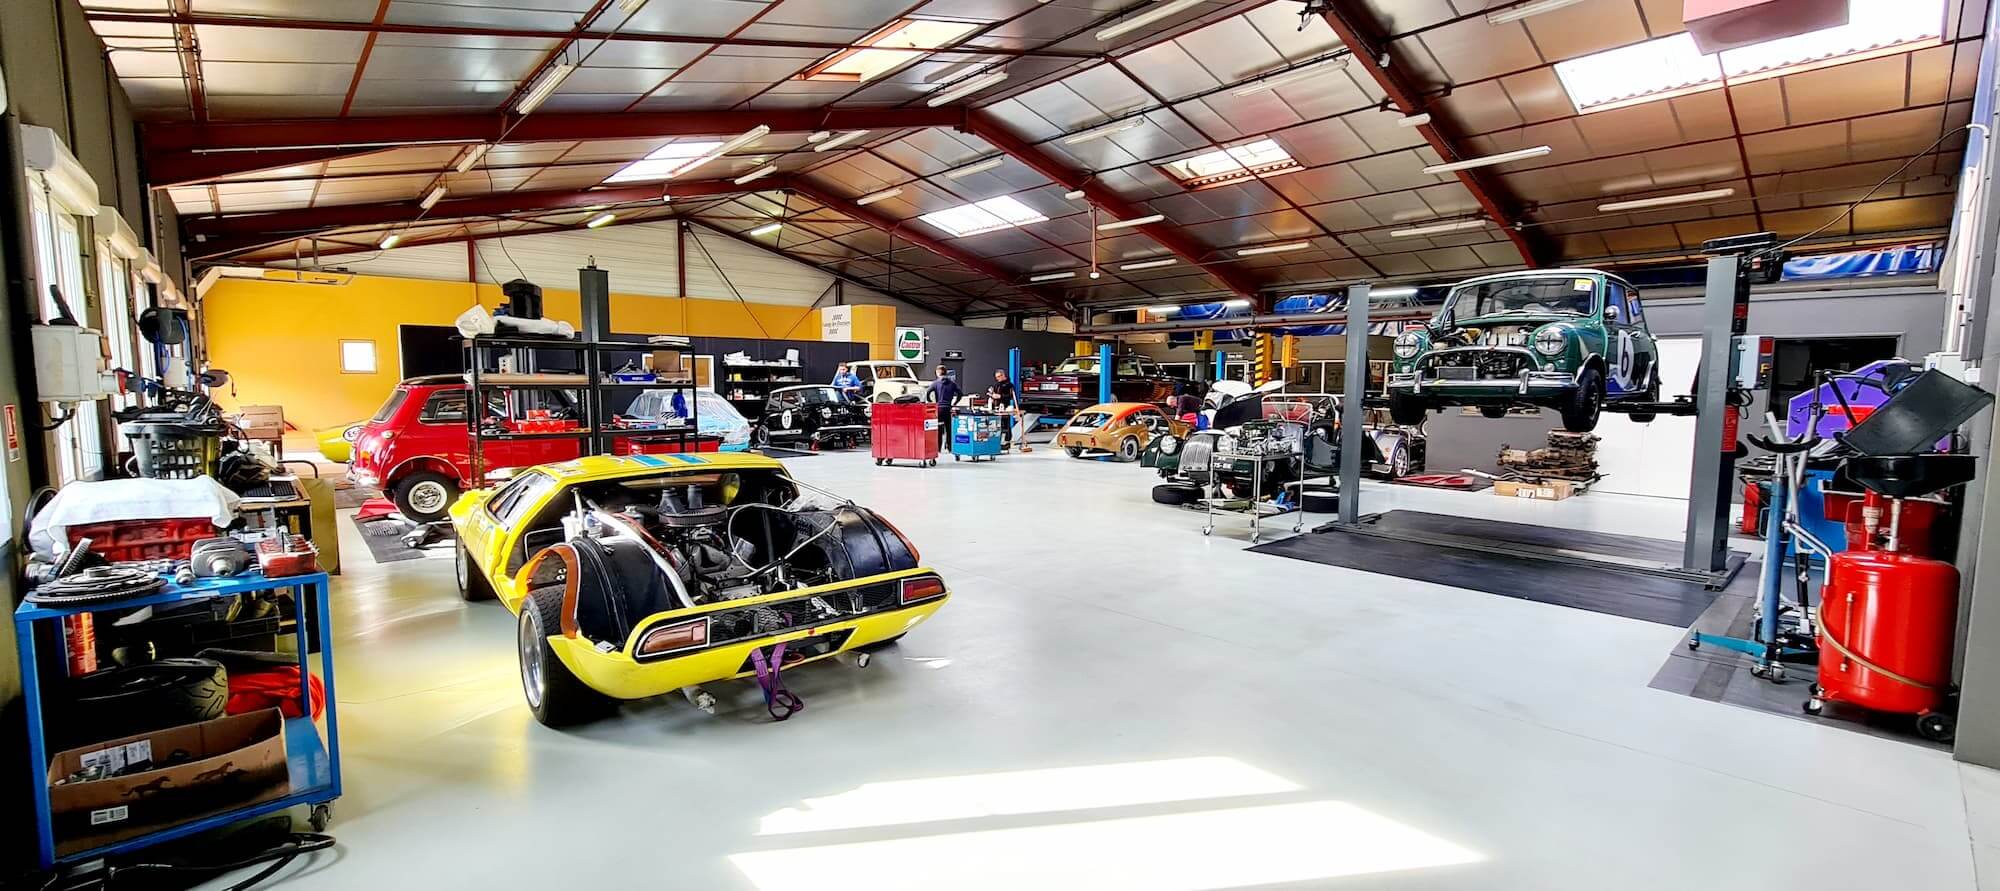 Garage des Damiers - Atelier mécanique - Préparation compétition automobile - historic racing - historic cars - classic cars